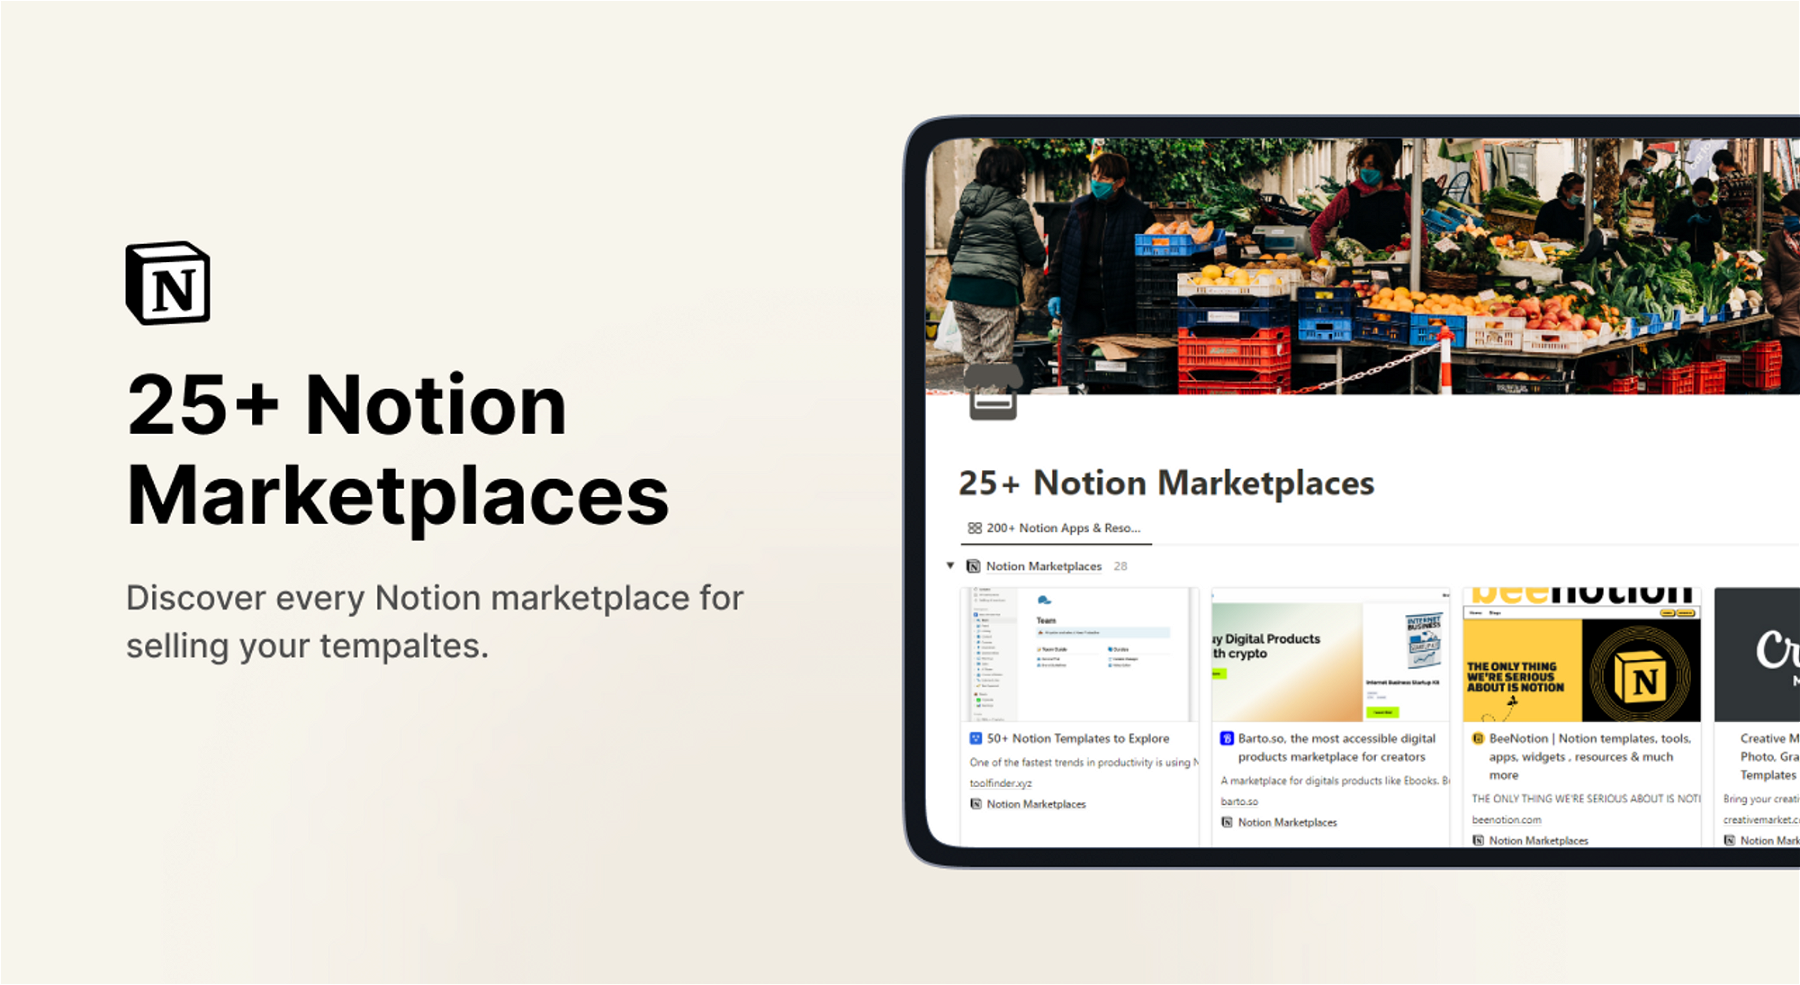 25+ Notion Marketplaces